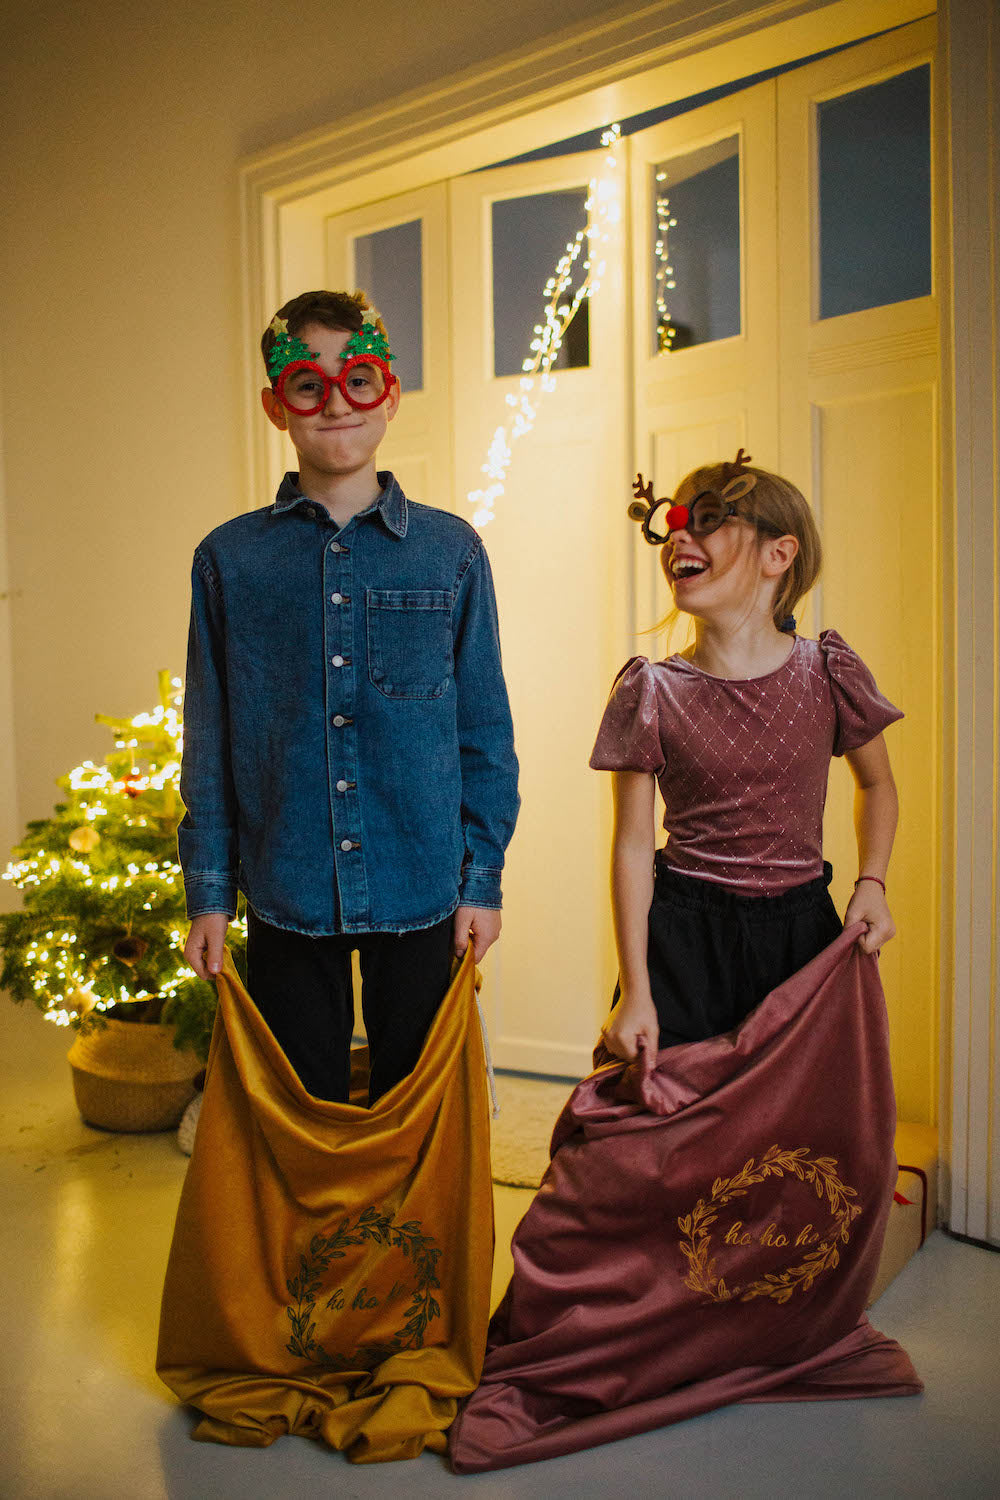 chłopiec i dziewczynka ze świątecznymi okularami trzymają w ręce worki na prezenty welurowe od Bettys Home